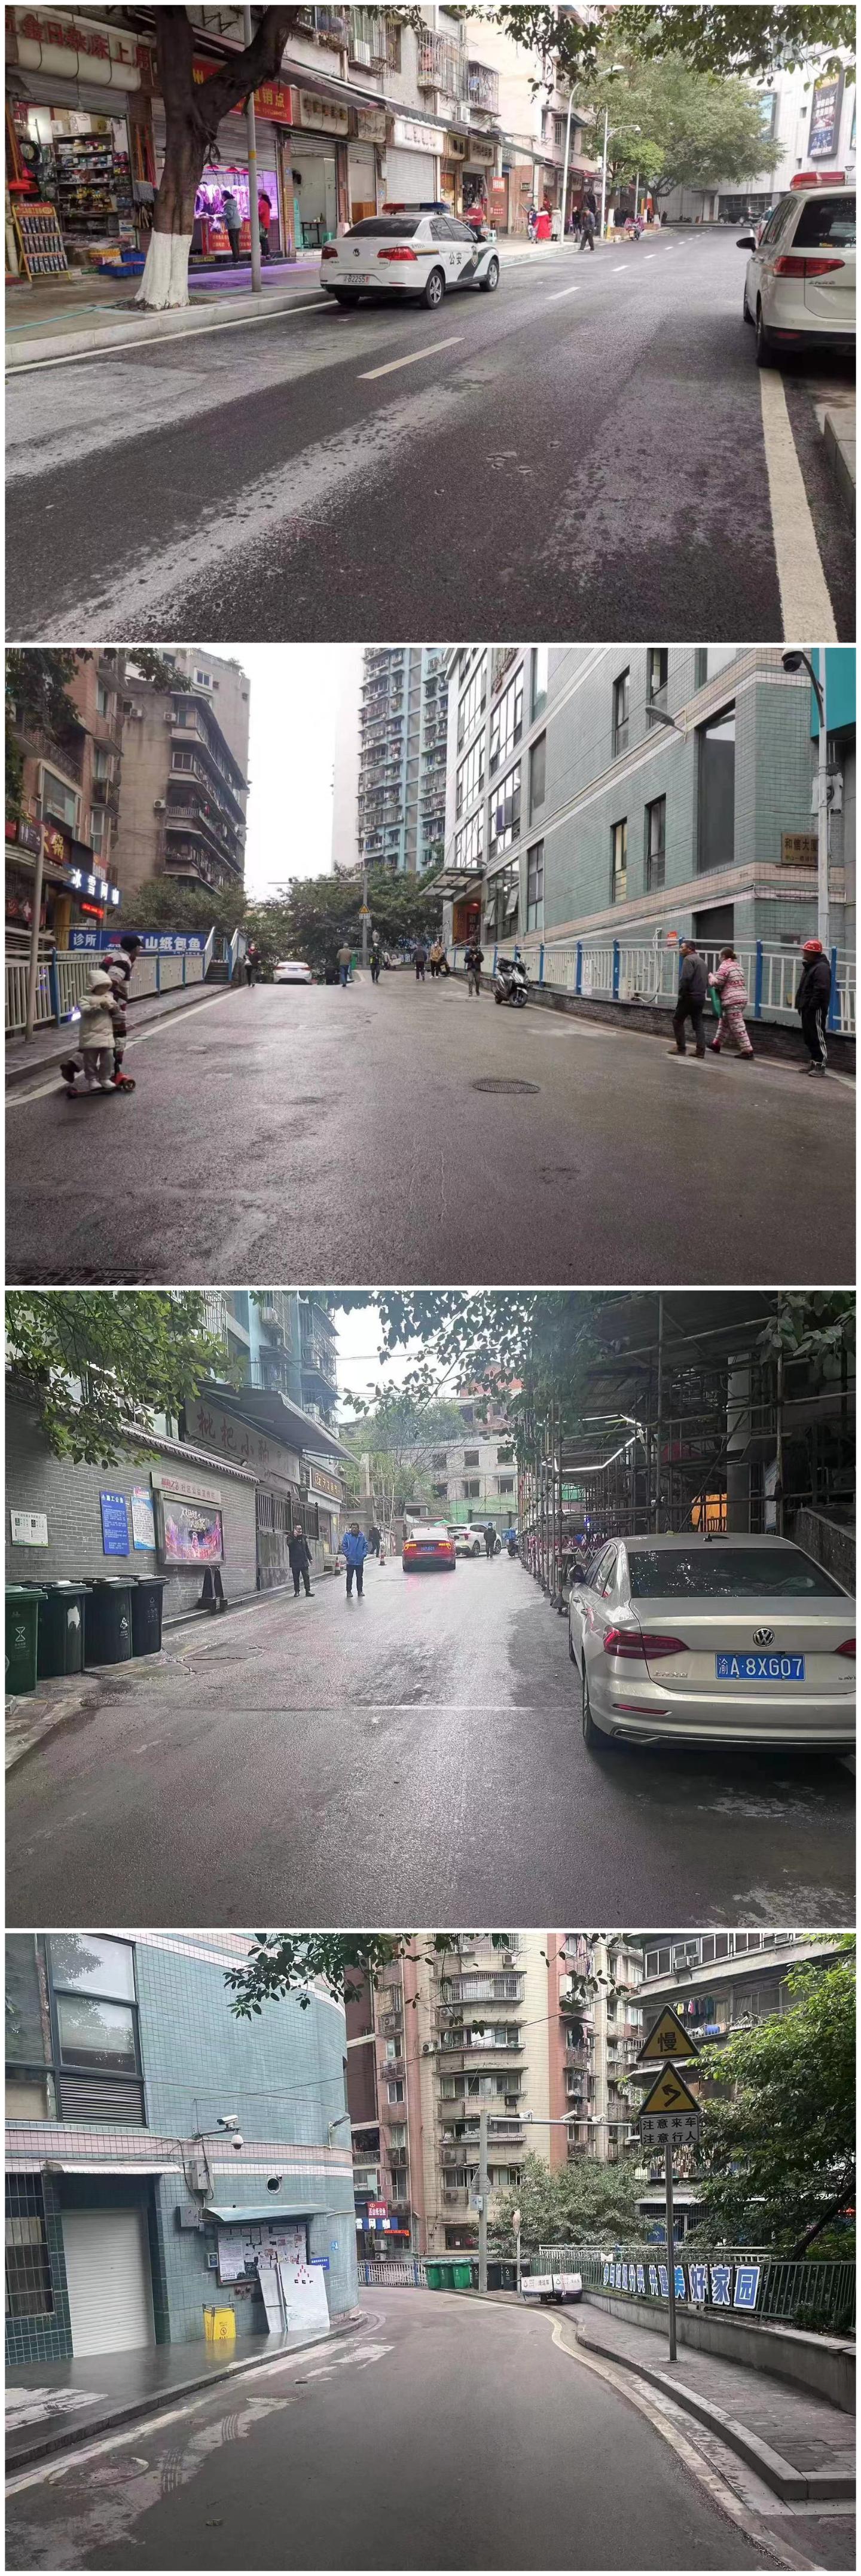 渝中区——违停车辆长期占用消防通道和救生道路